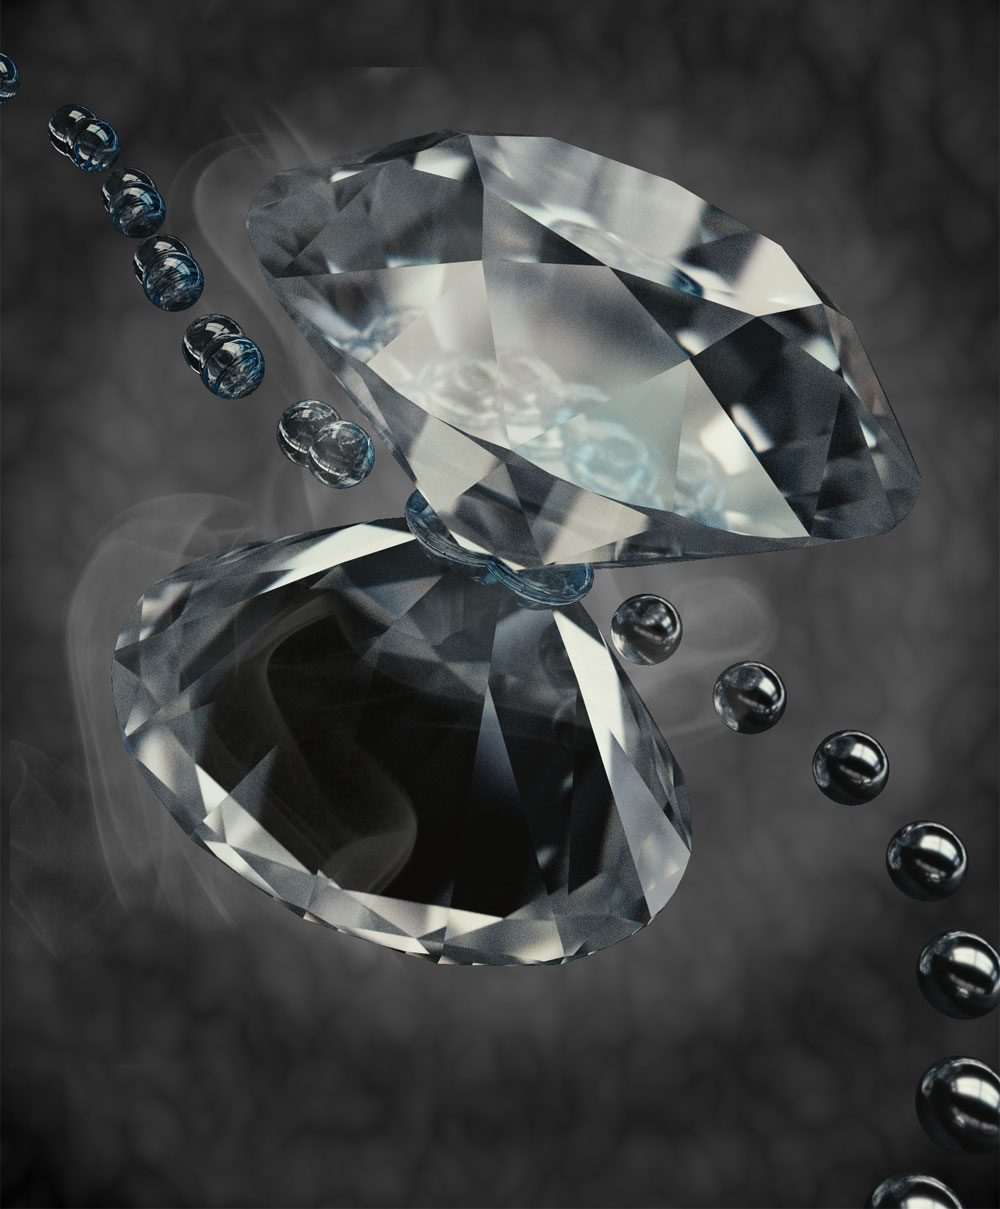 1対のダイヤモンド単結晶からなる対向アンビル装置を用いた、水素分子の圧縮（イメージ画像）。誘電性の分子状態（左上）が加圧によって金属原子状態（右下）へと変態する。